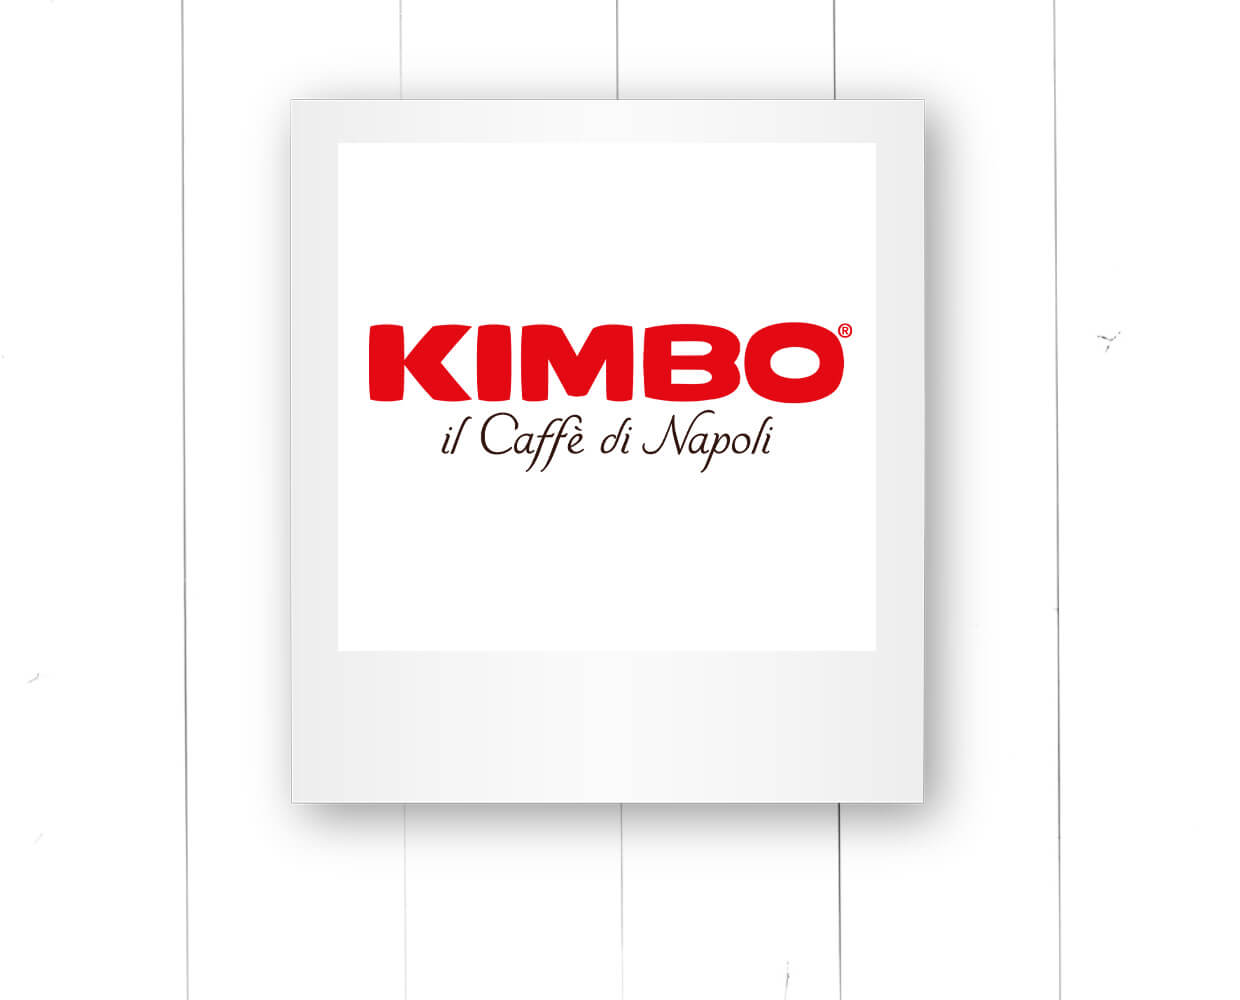 Kimbo Logo